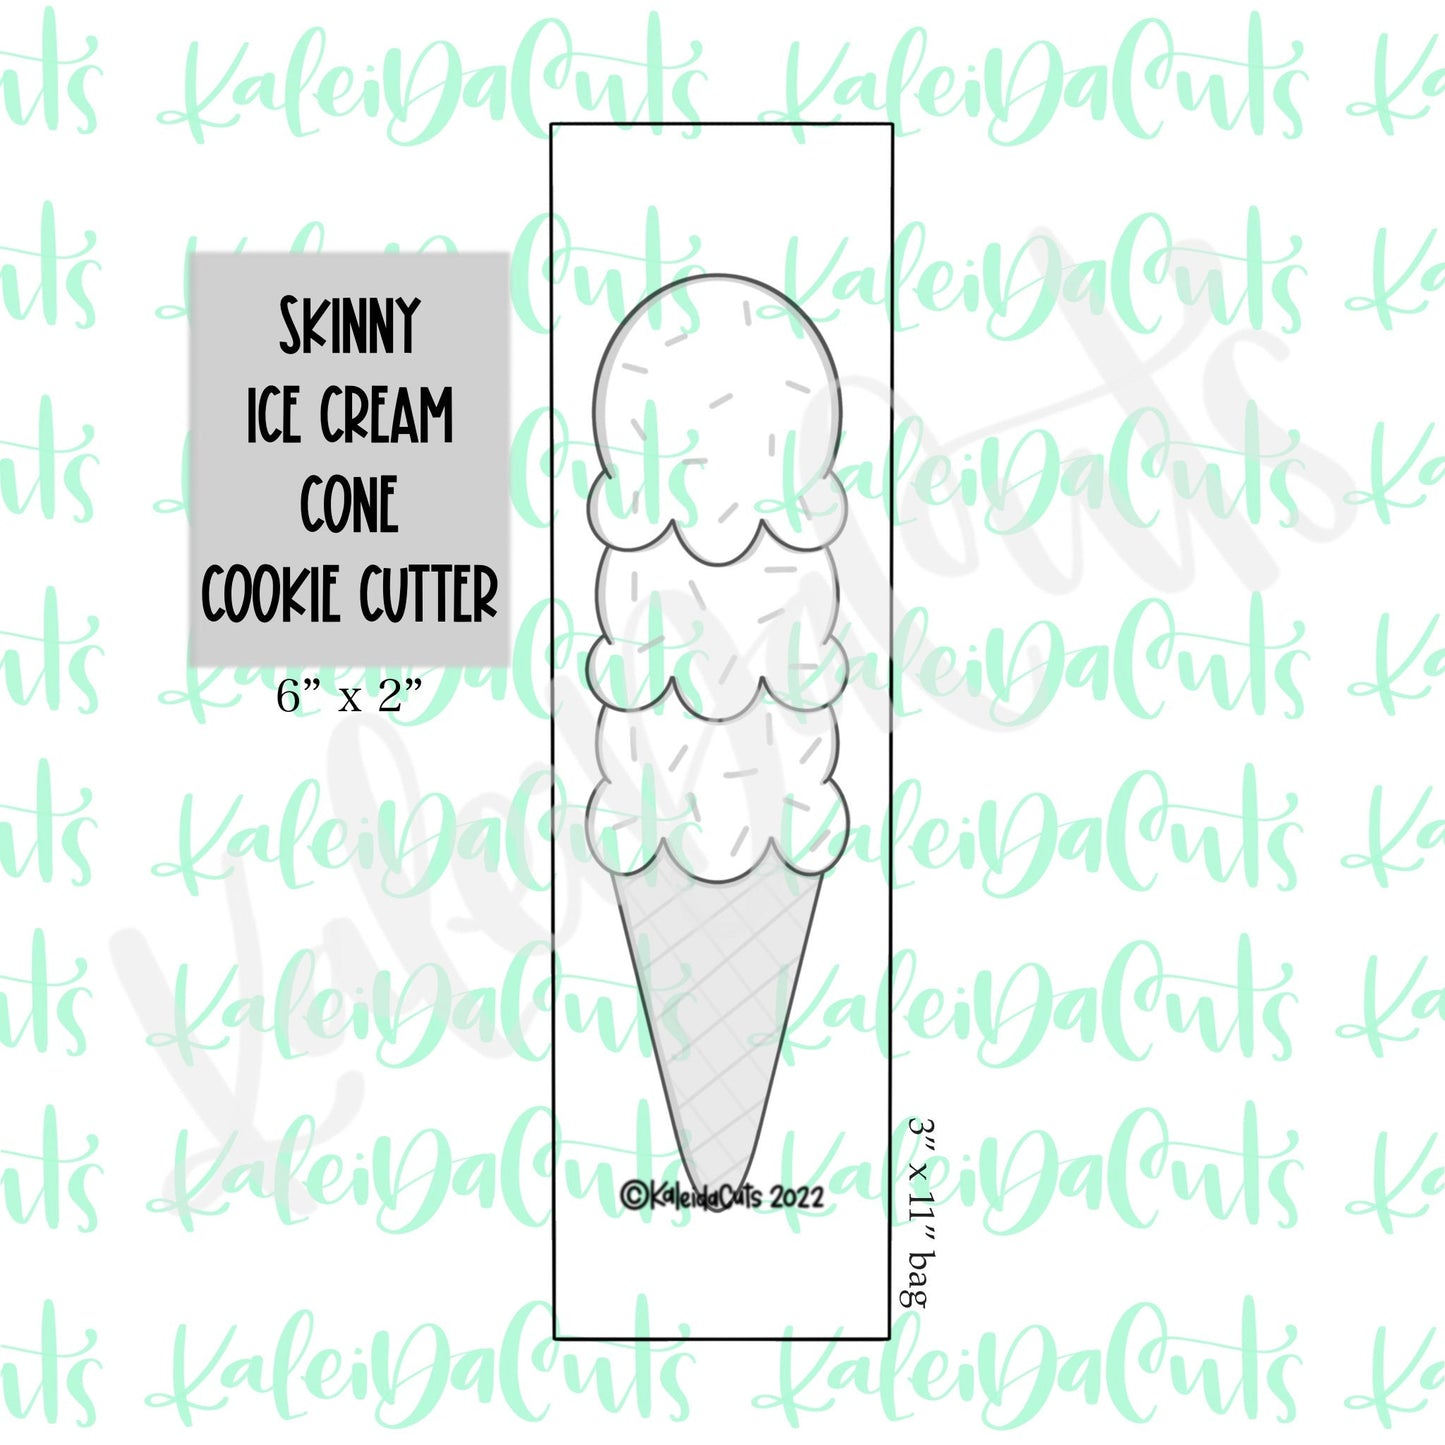 Skinny Ice Cream Cone 6" Cookie Cutter